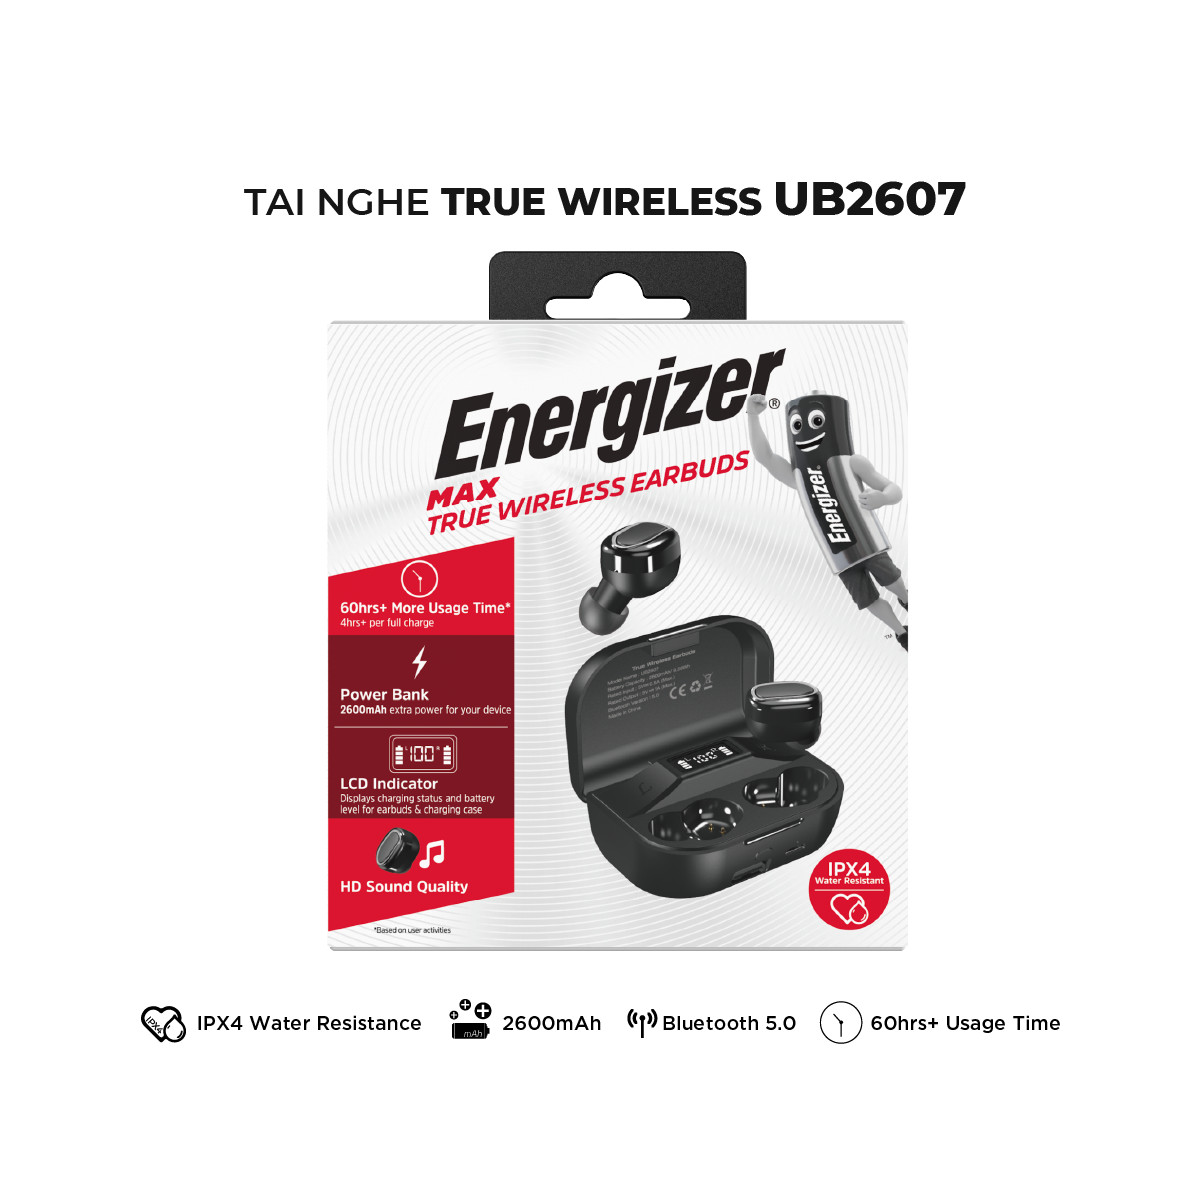 Tai nghe True Wireless Stereo Energizer UB2607 - tích hợp sạc dự phòng 2600mAh, thiết kế nhỏ gọn, âm thanh chuẩn HD - HÀNG CHÍNH HÃNG